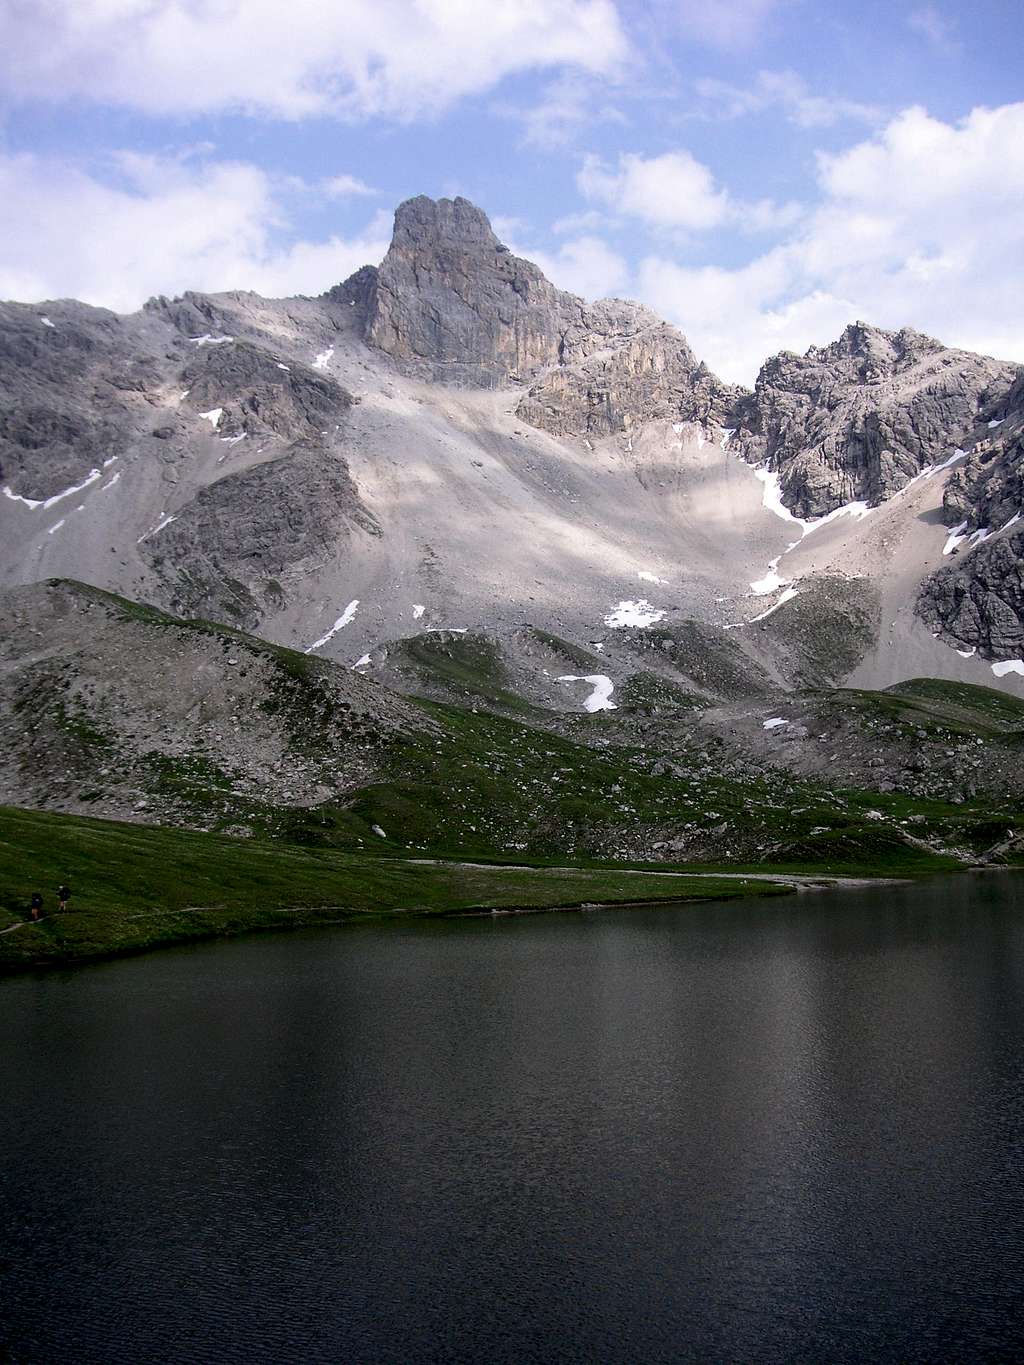 Bergwerkskopf and Steinsee lake